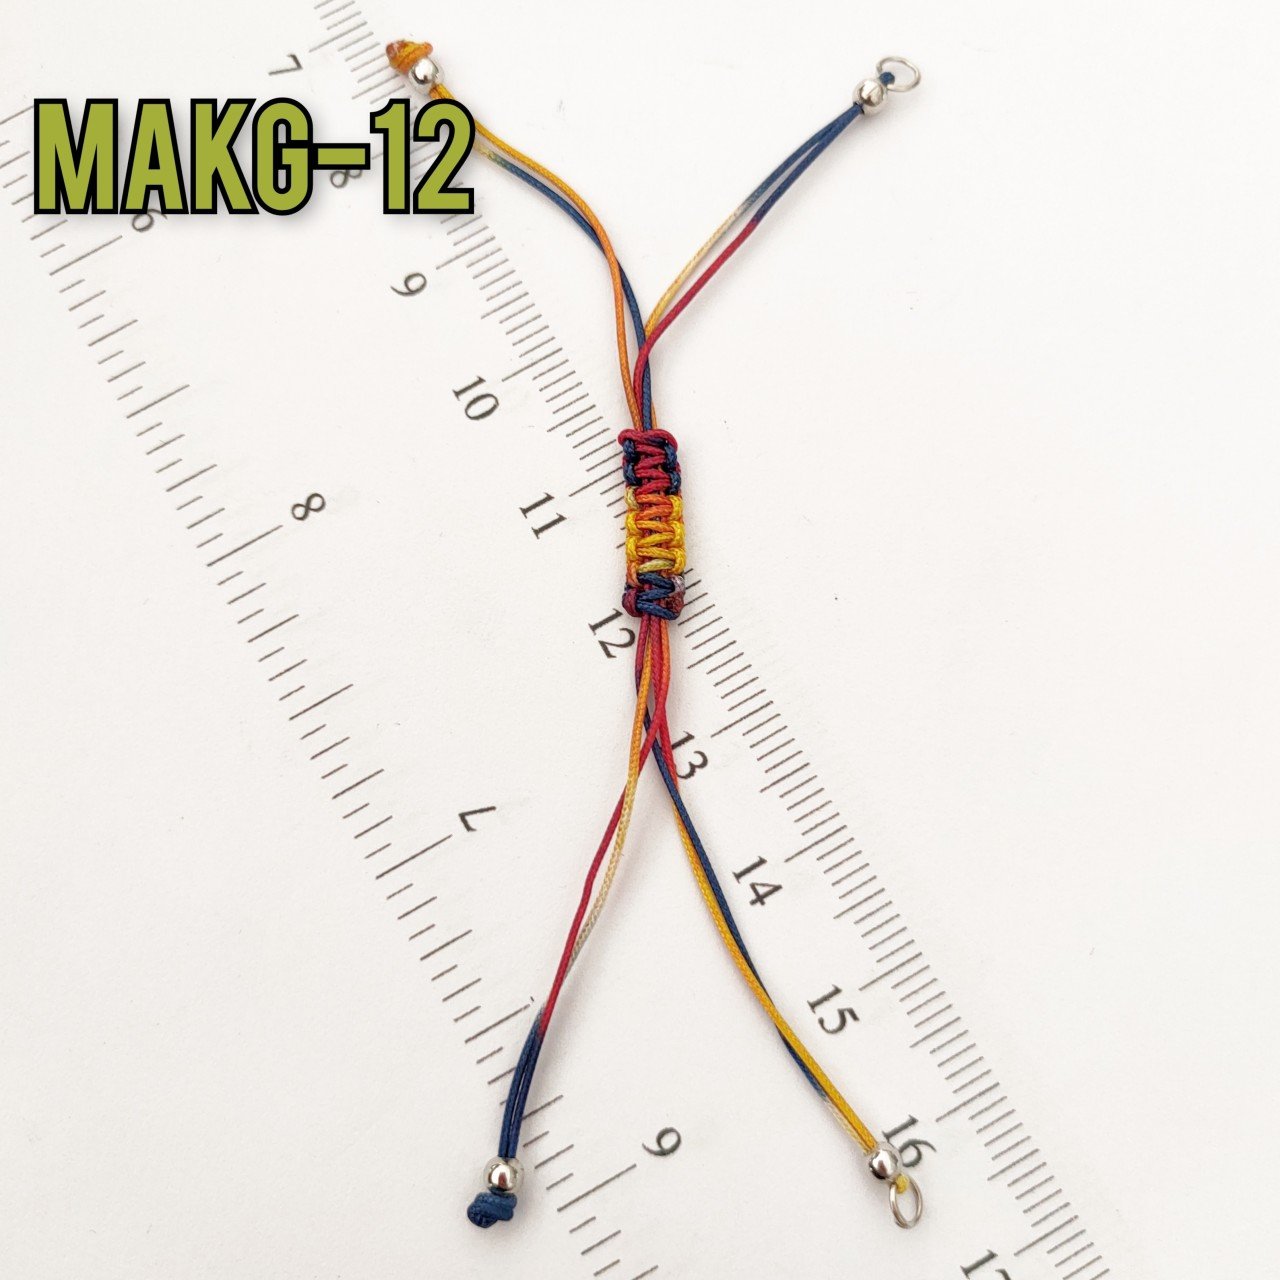 MAKG-12 Ebruli Rodyum Kaplama Asansör Makromeli Aparat - Miyuki Boncuk İçin